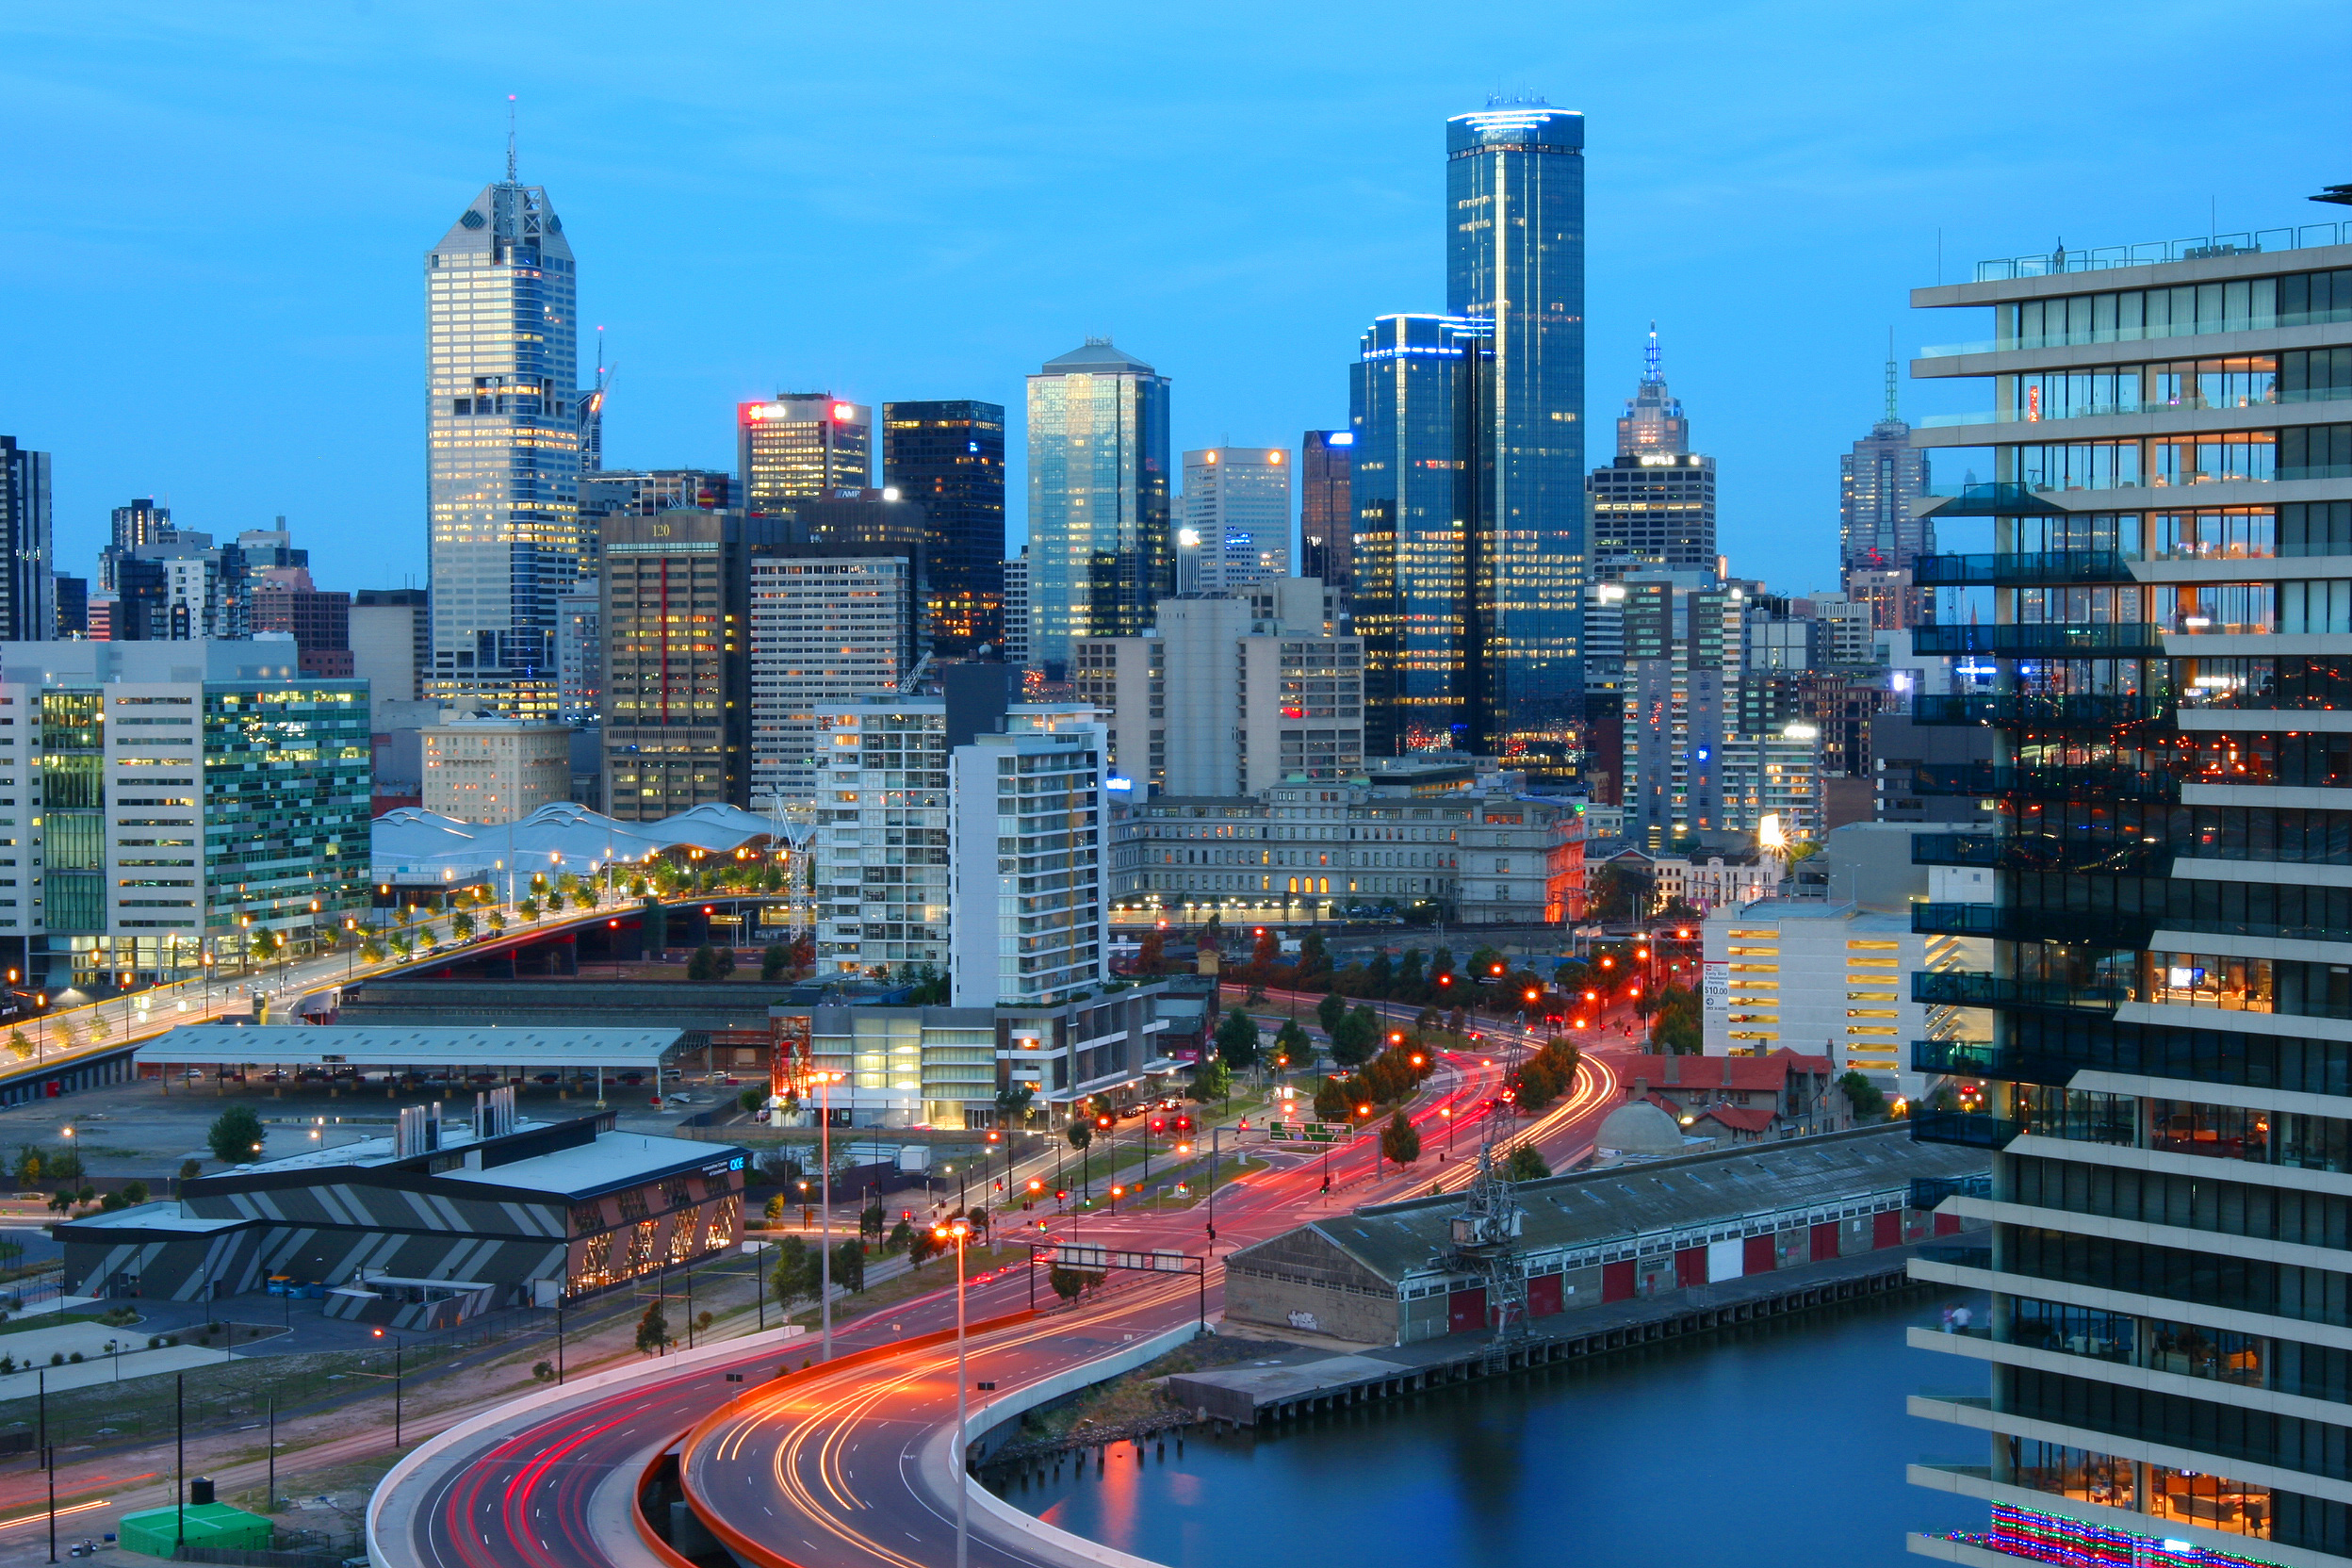 Melbourne Australia city river bridge buildings lights 640x960 iPhone  44S wallpaper background picture image